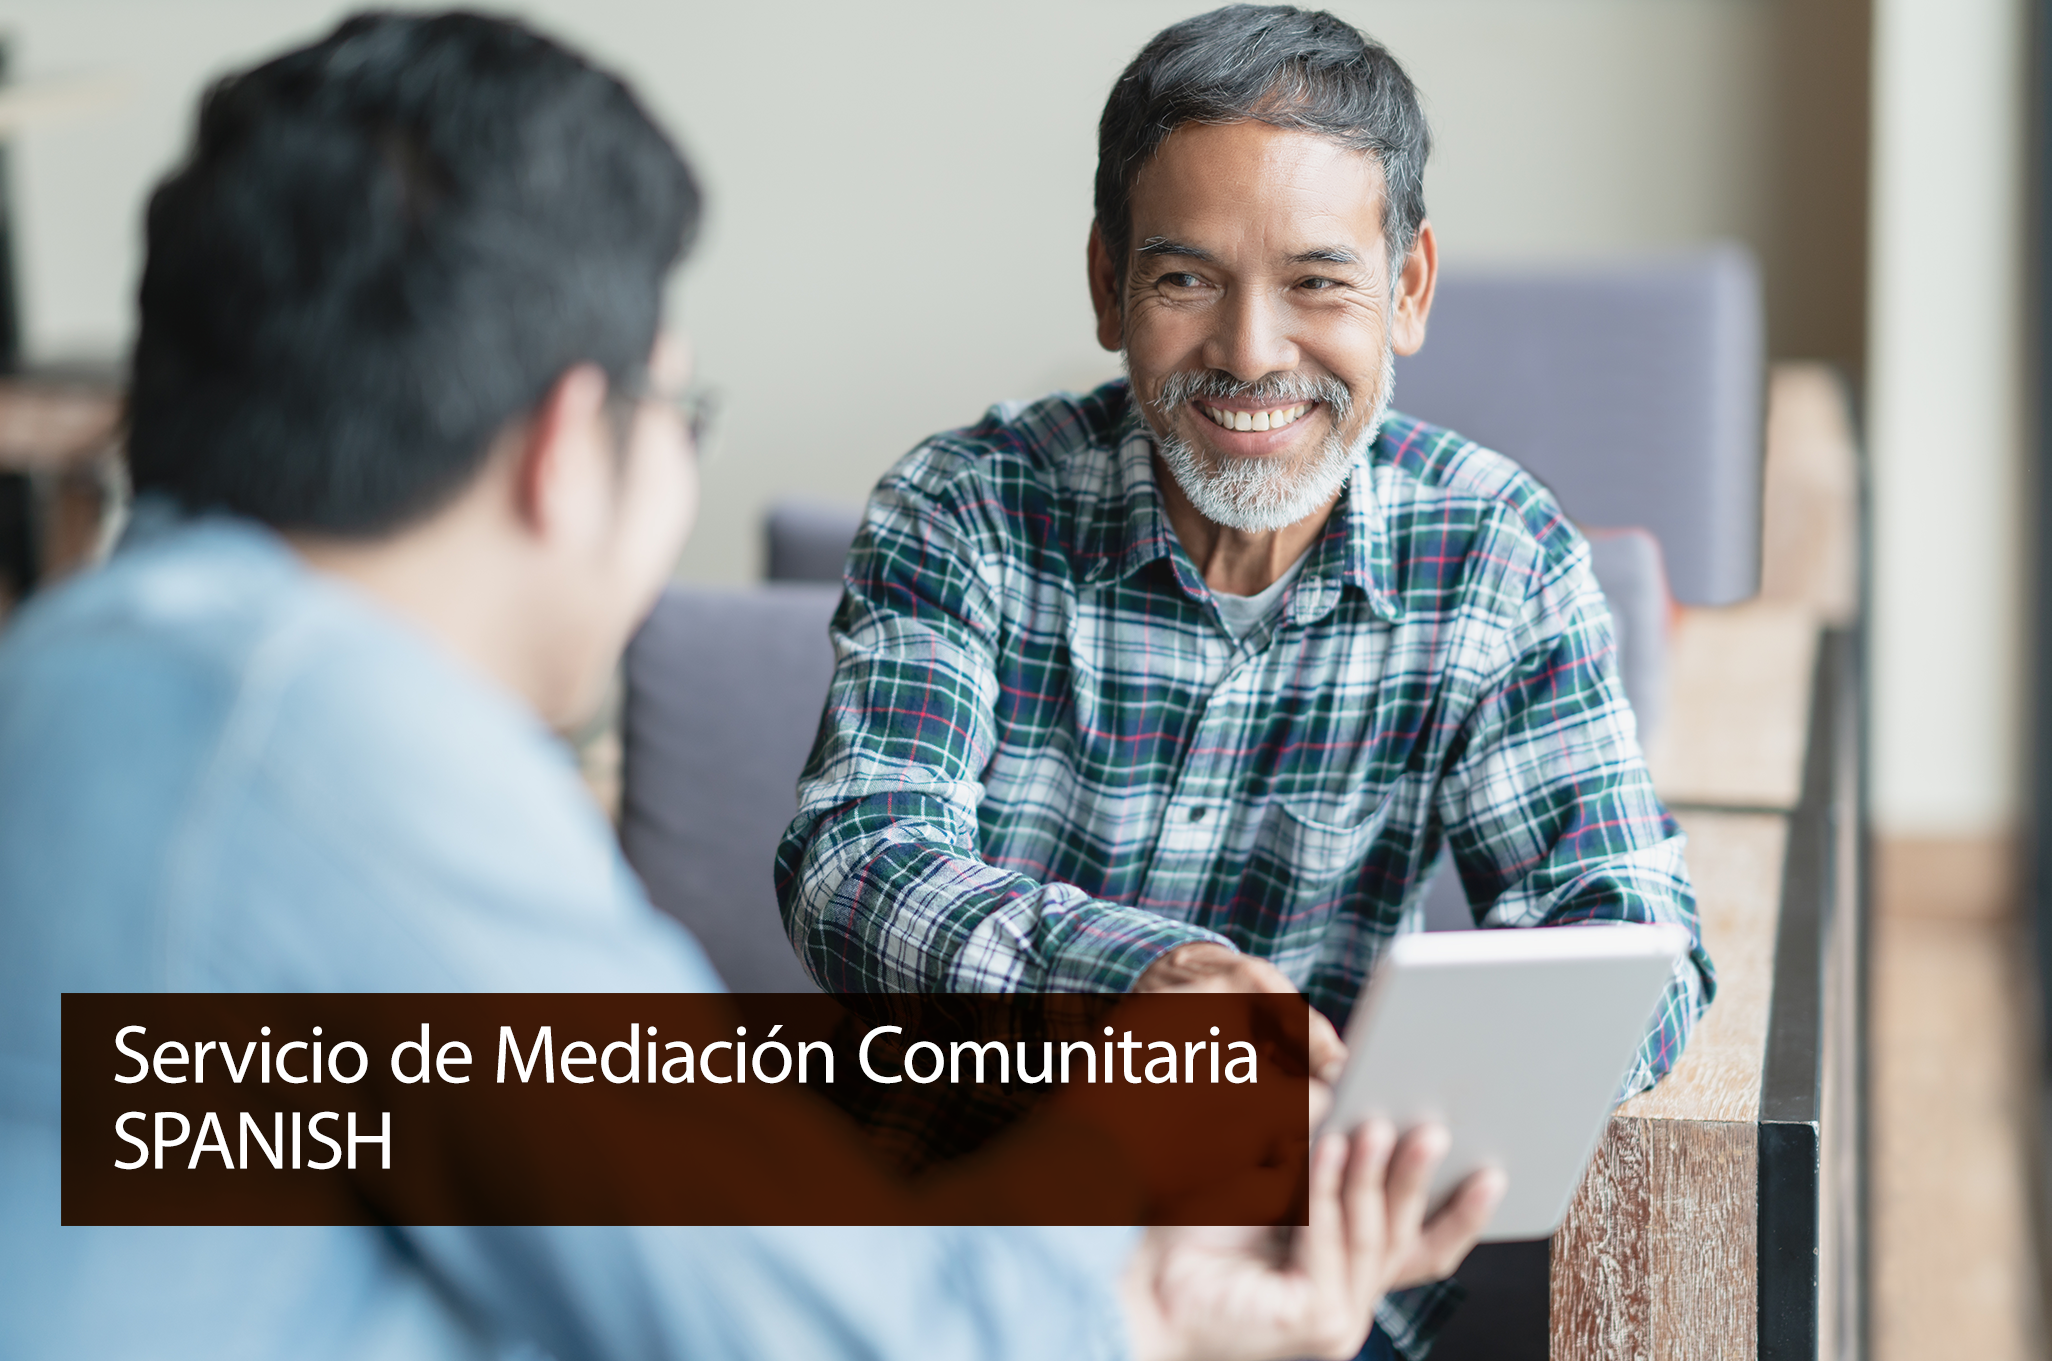 Community Mediation Service - Spanish